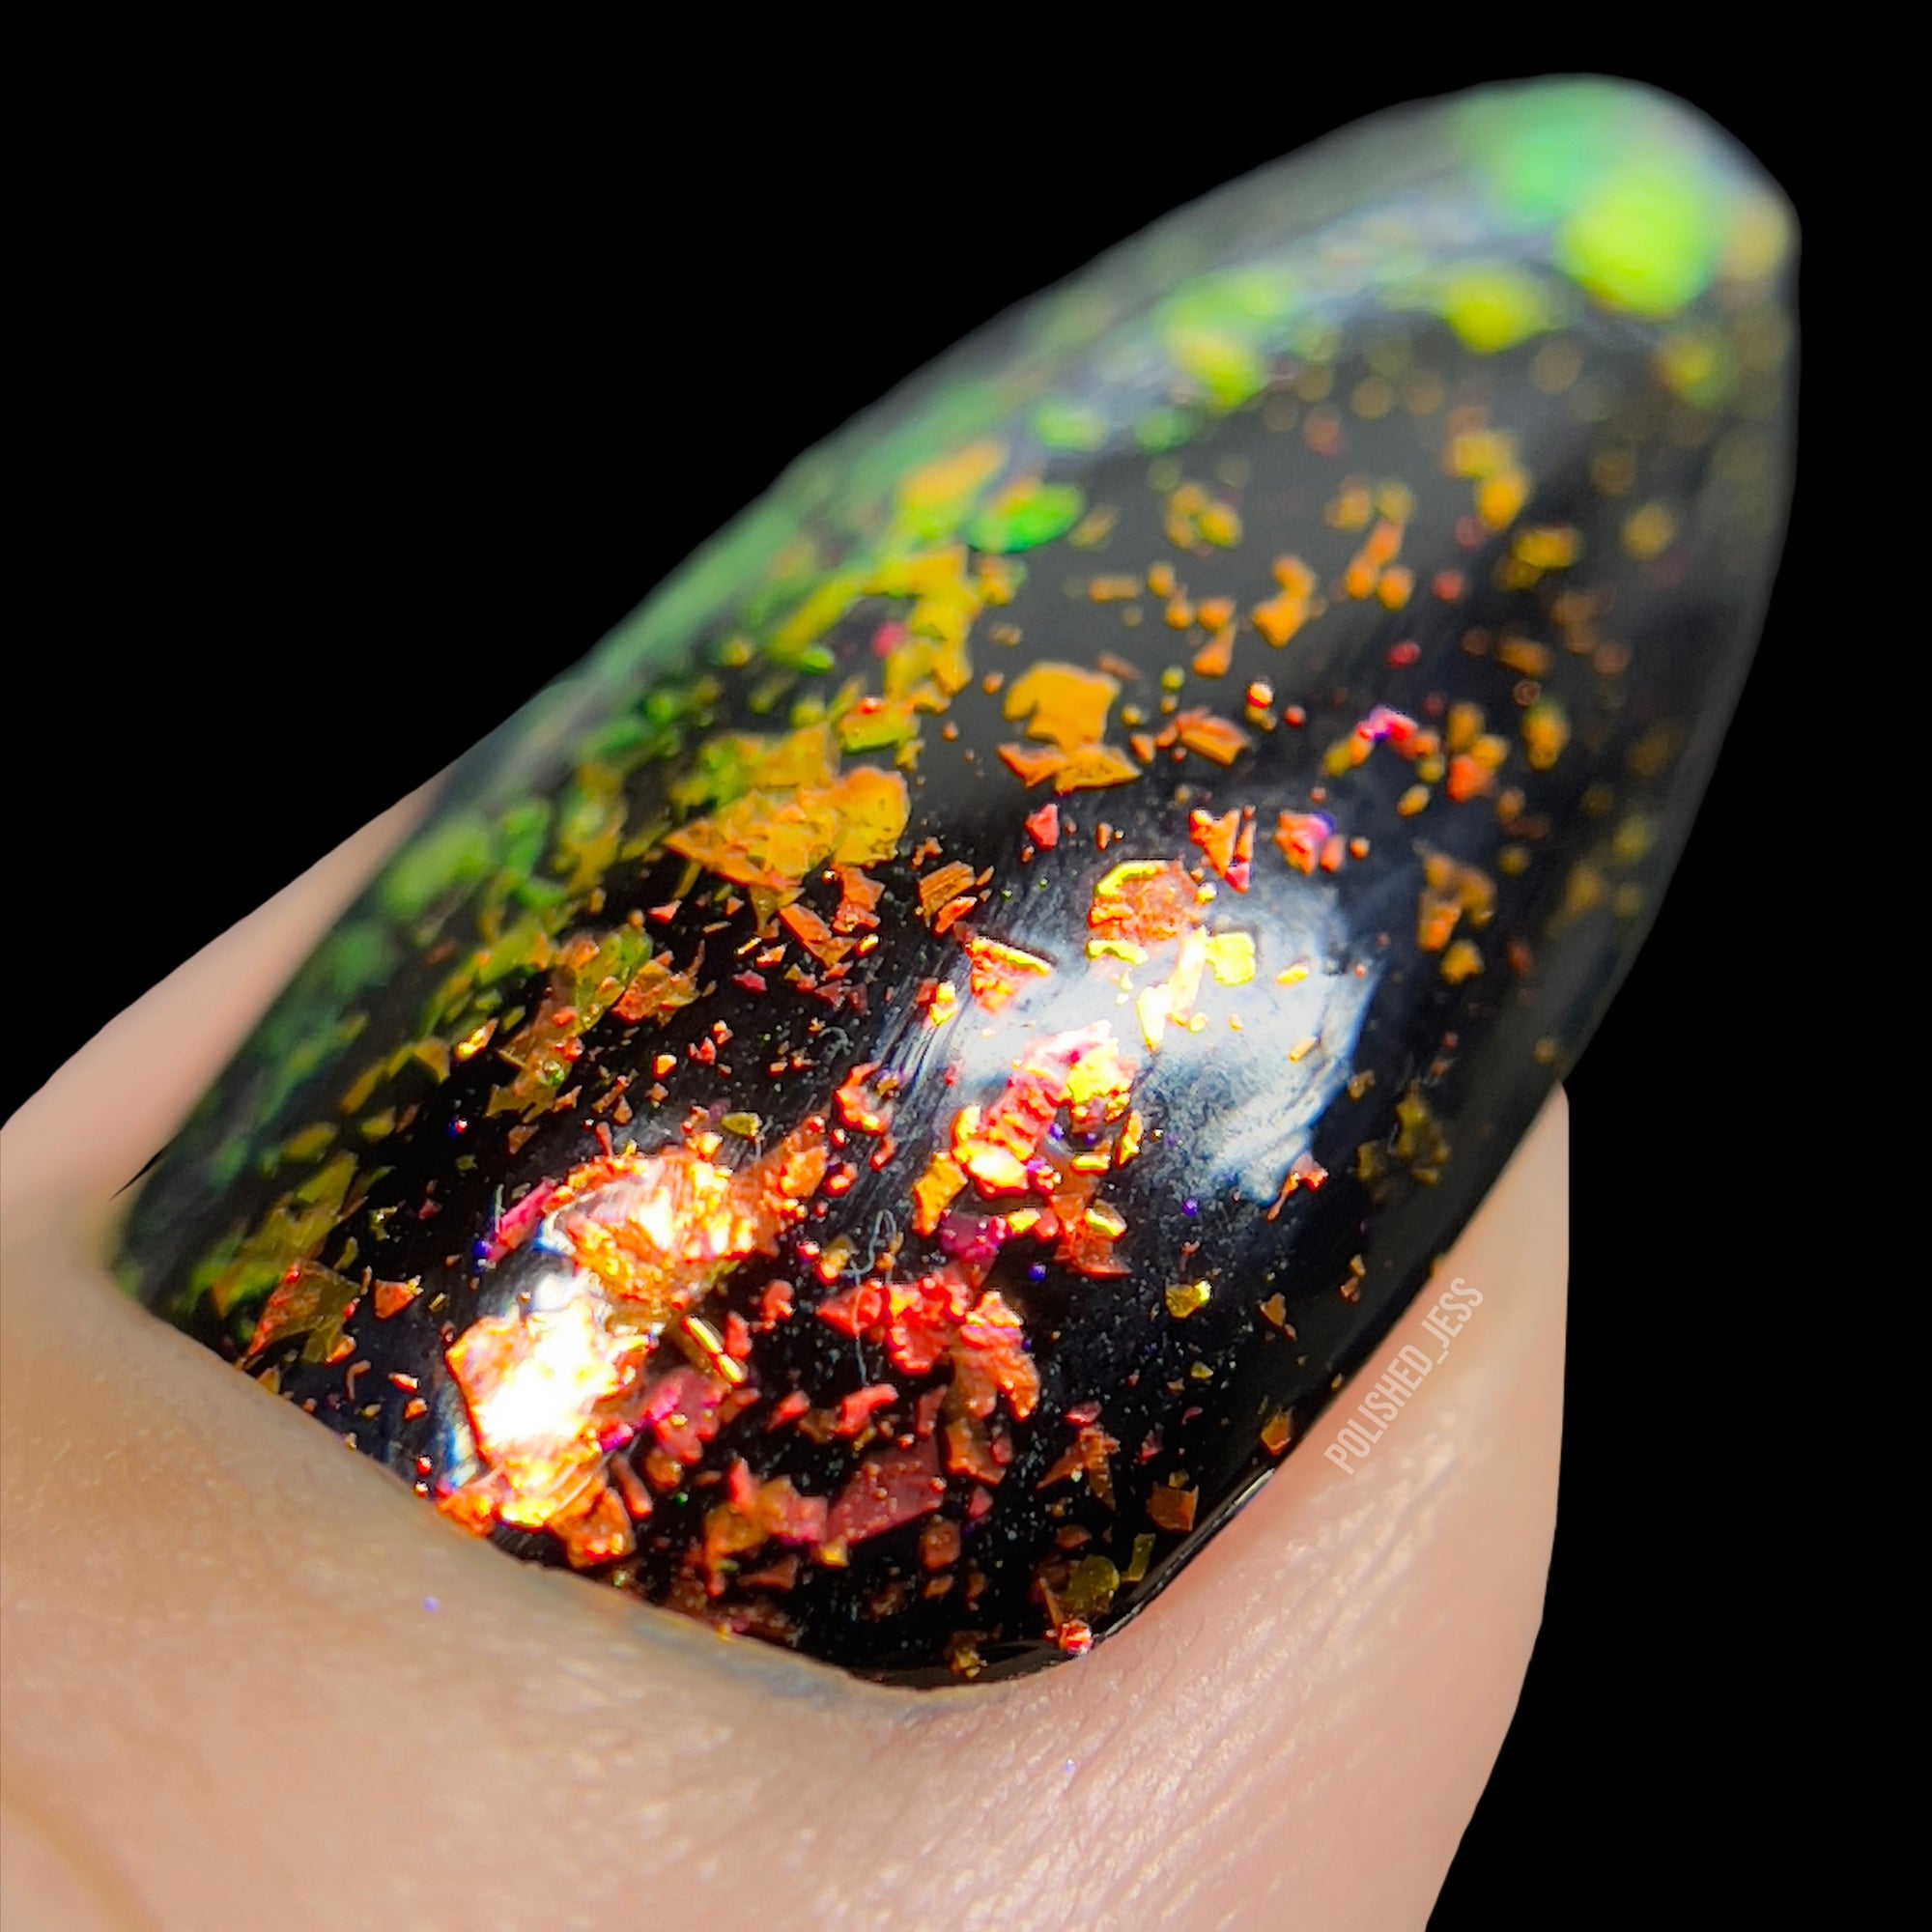 Fire Opal